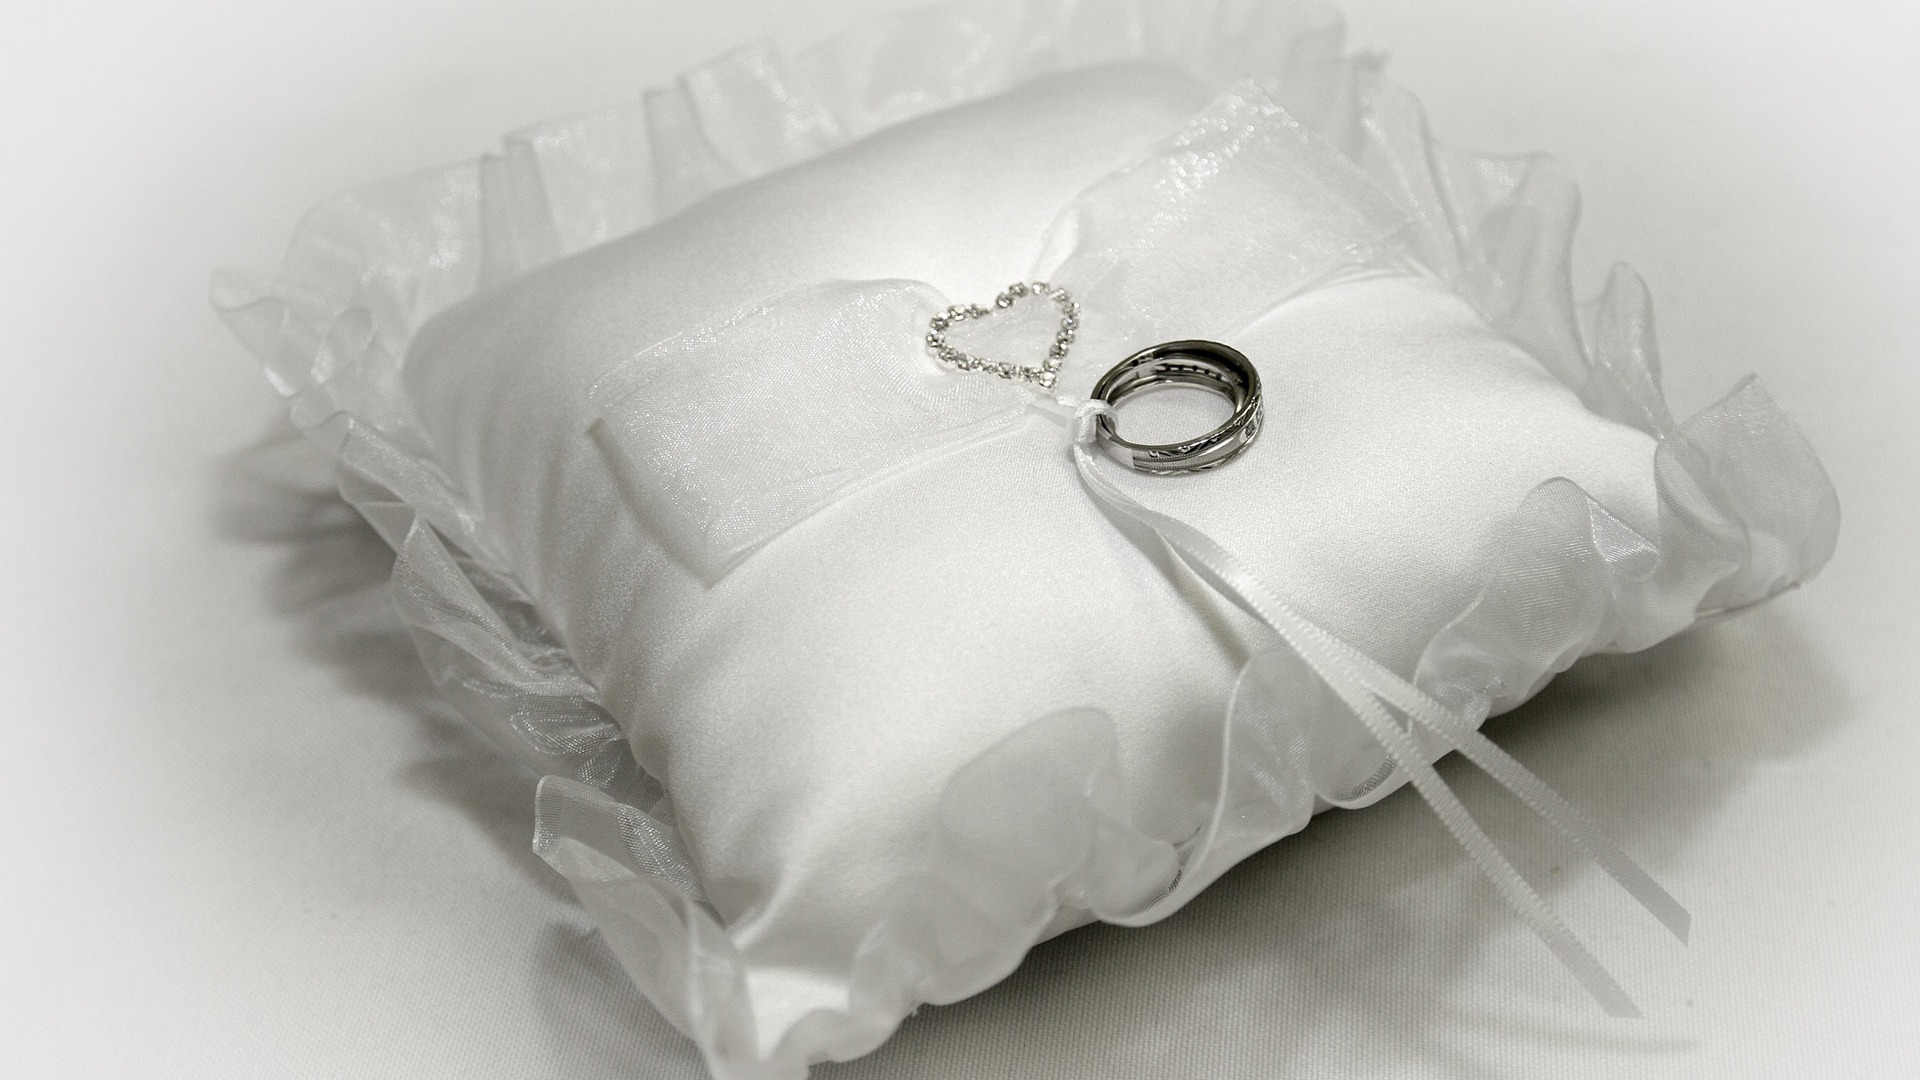 Mariage et papier peint anneau de mariage (1) #10 - 1920x1080